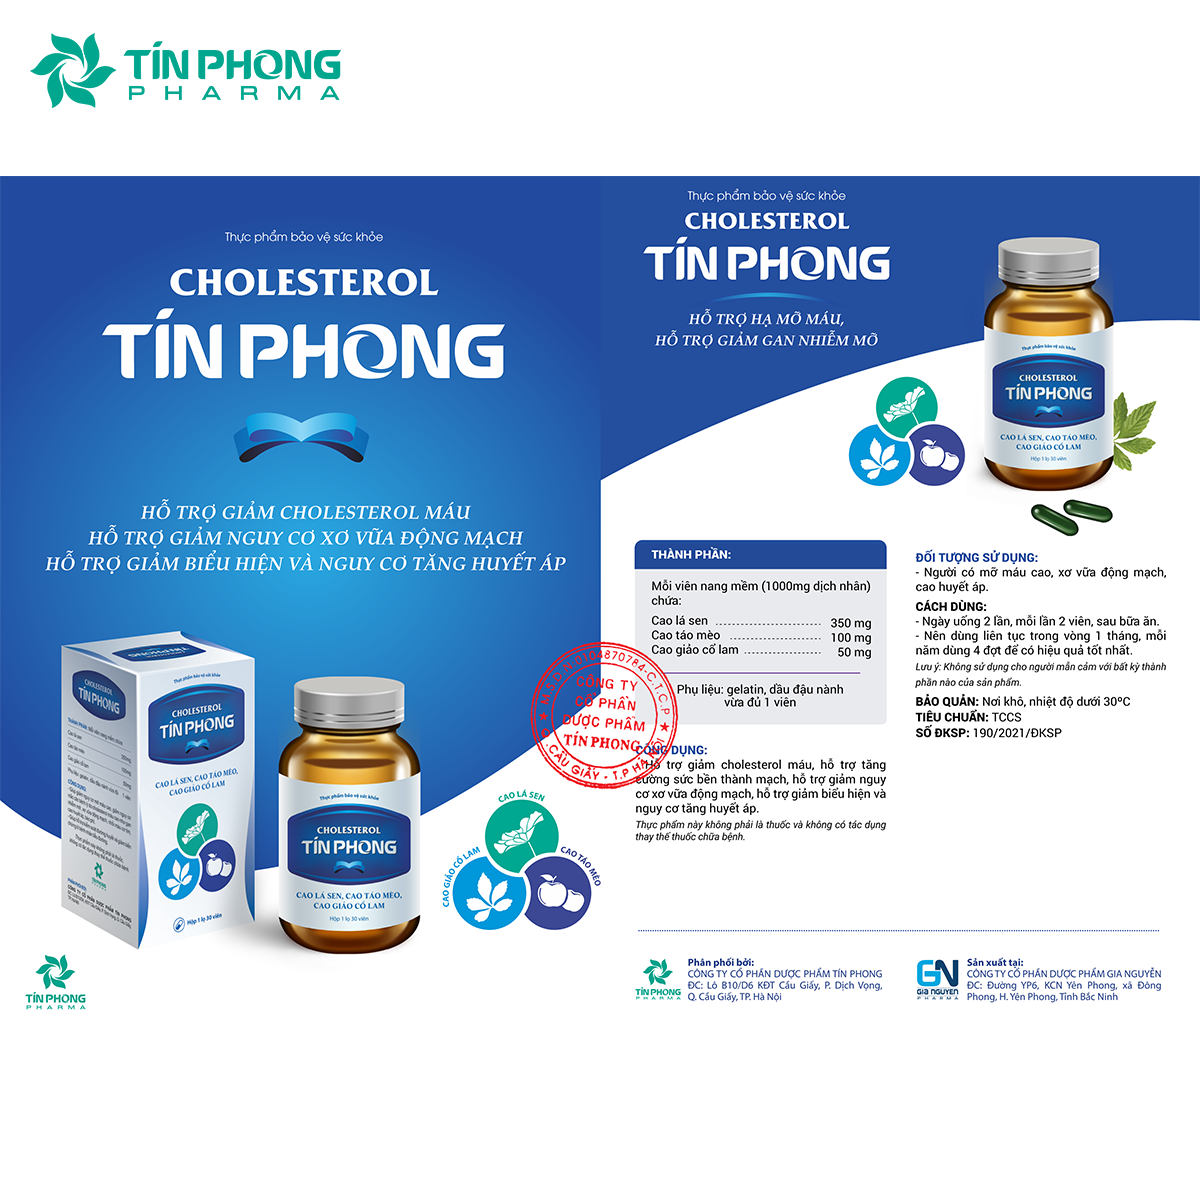 Thực phẩm bảo vệ sức khỏe Cholesterol Tín Phong - Công ty cổ phần Dược phẩm Tín  Phong.